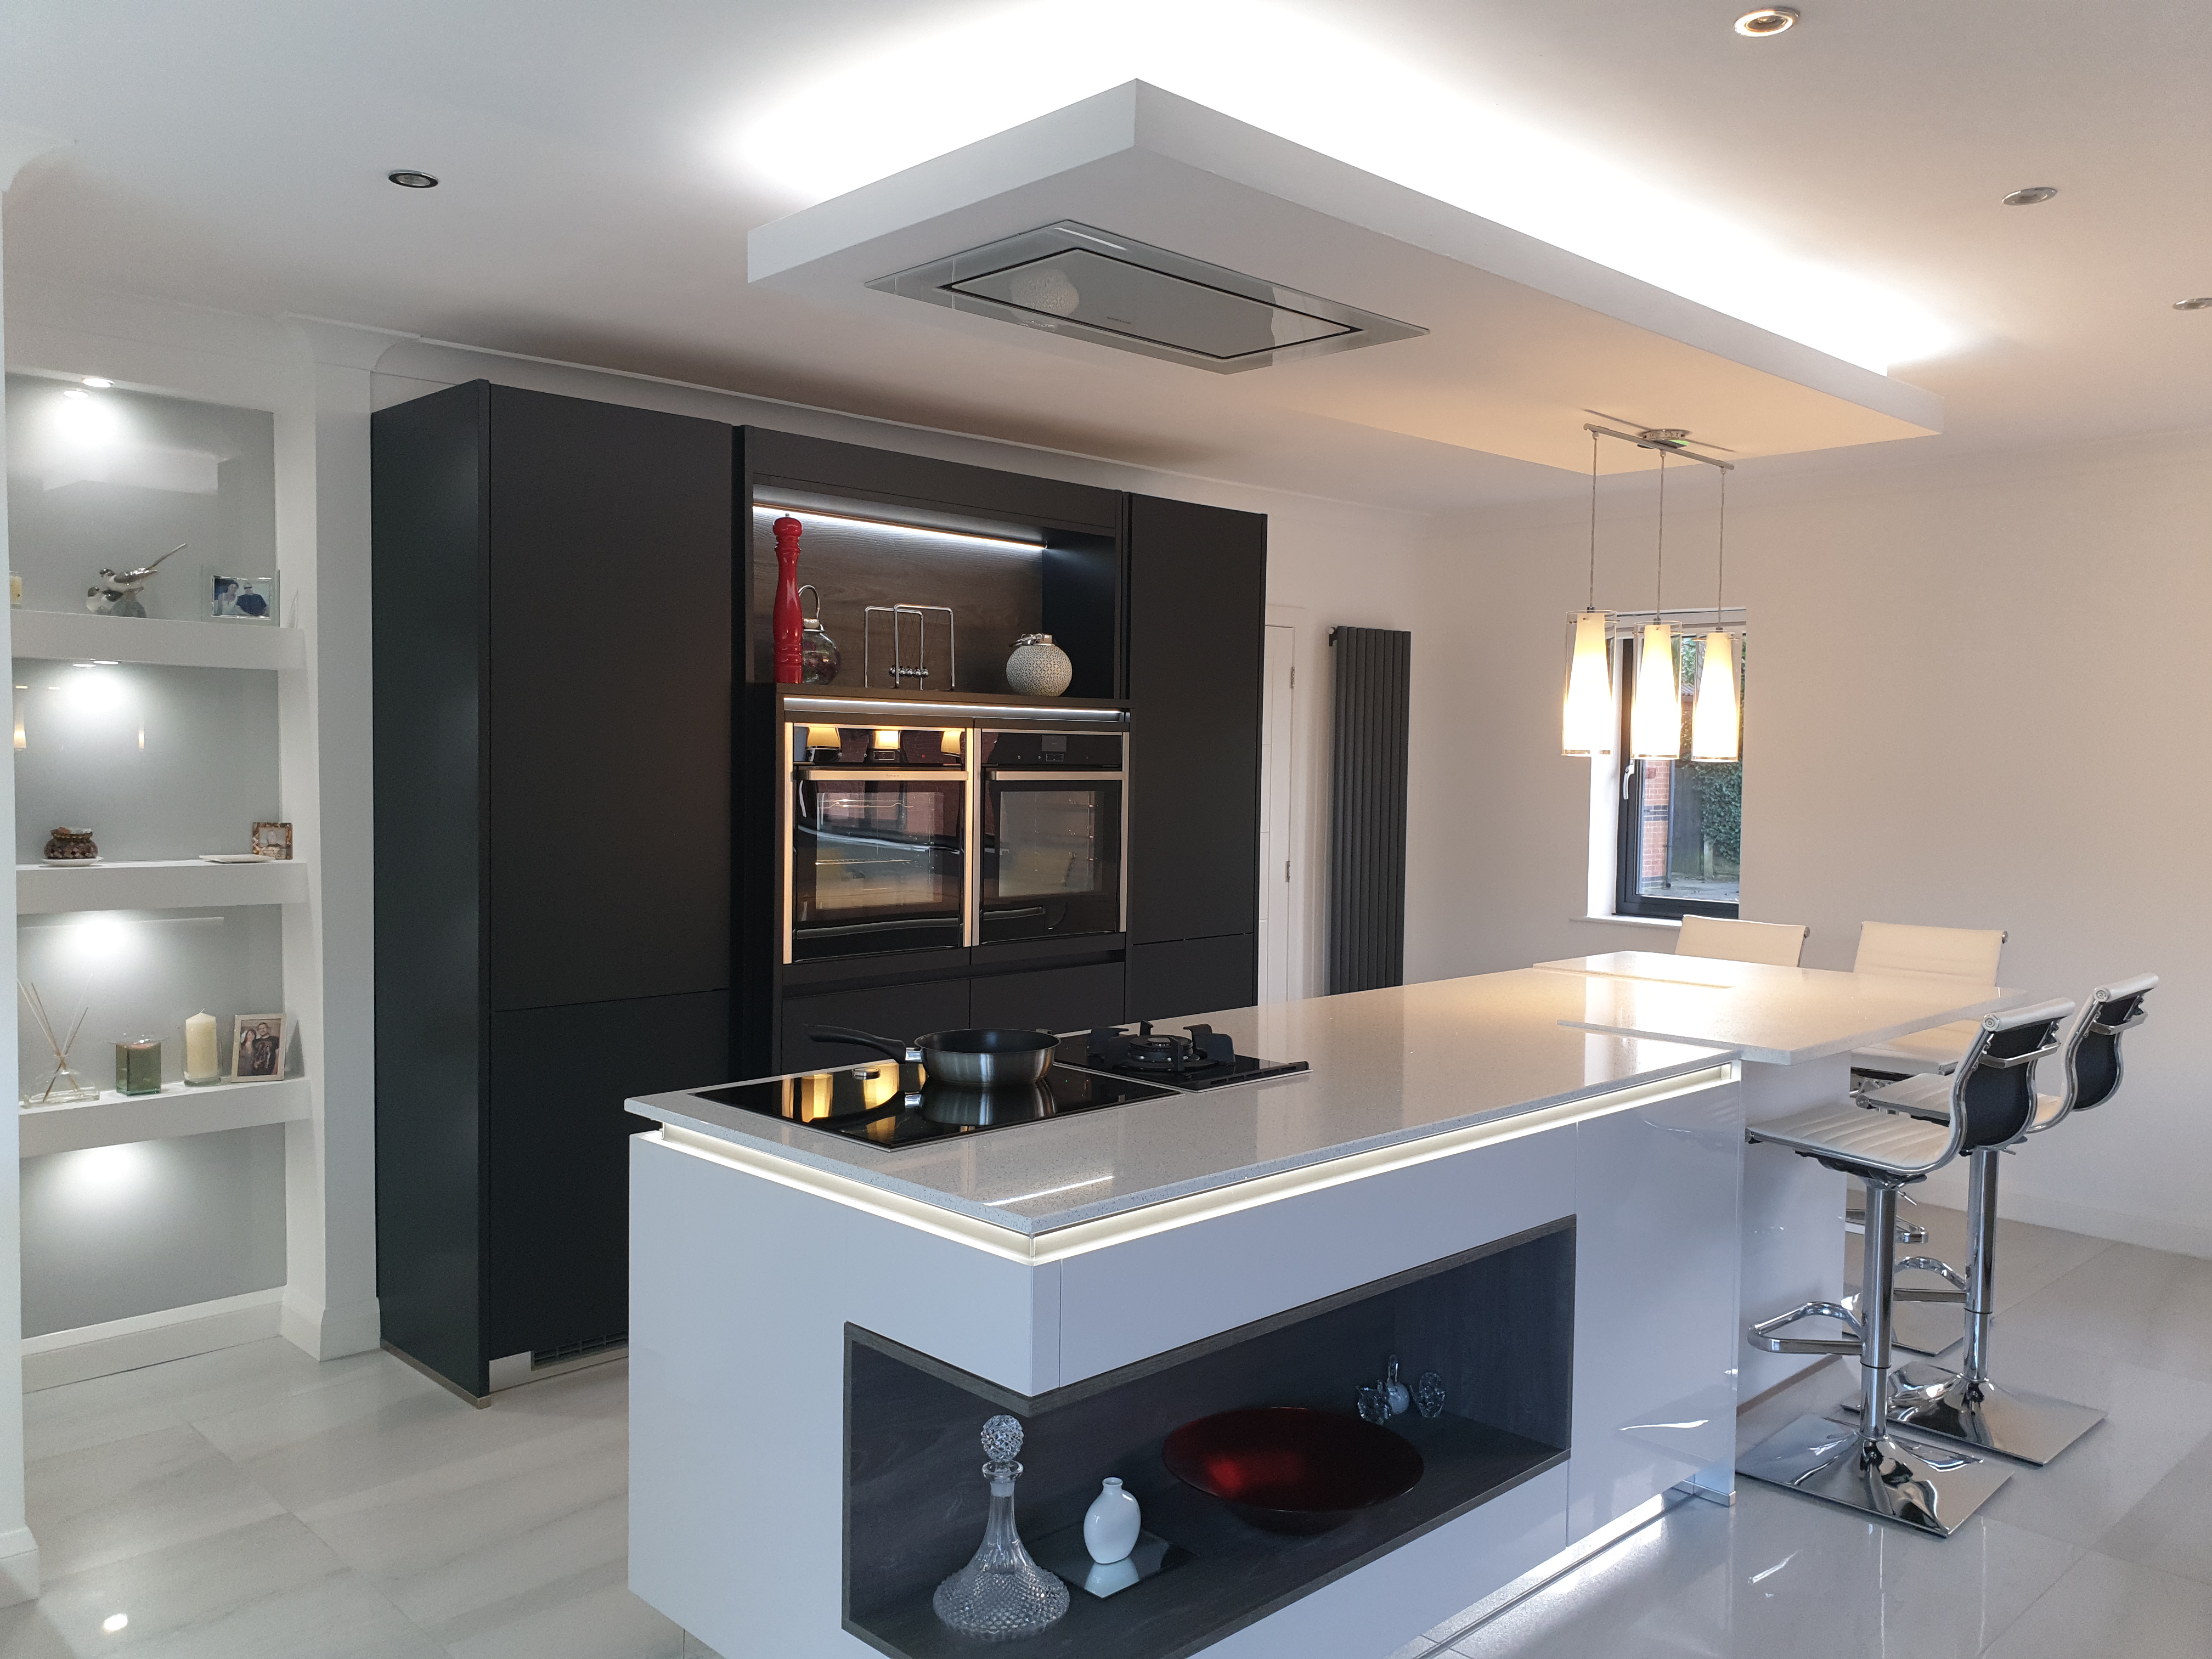 20190222_154901 | Neil Anthony Kitchens Casa Di Cucina Ltd